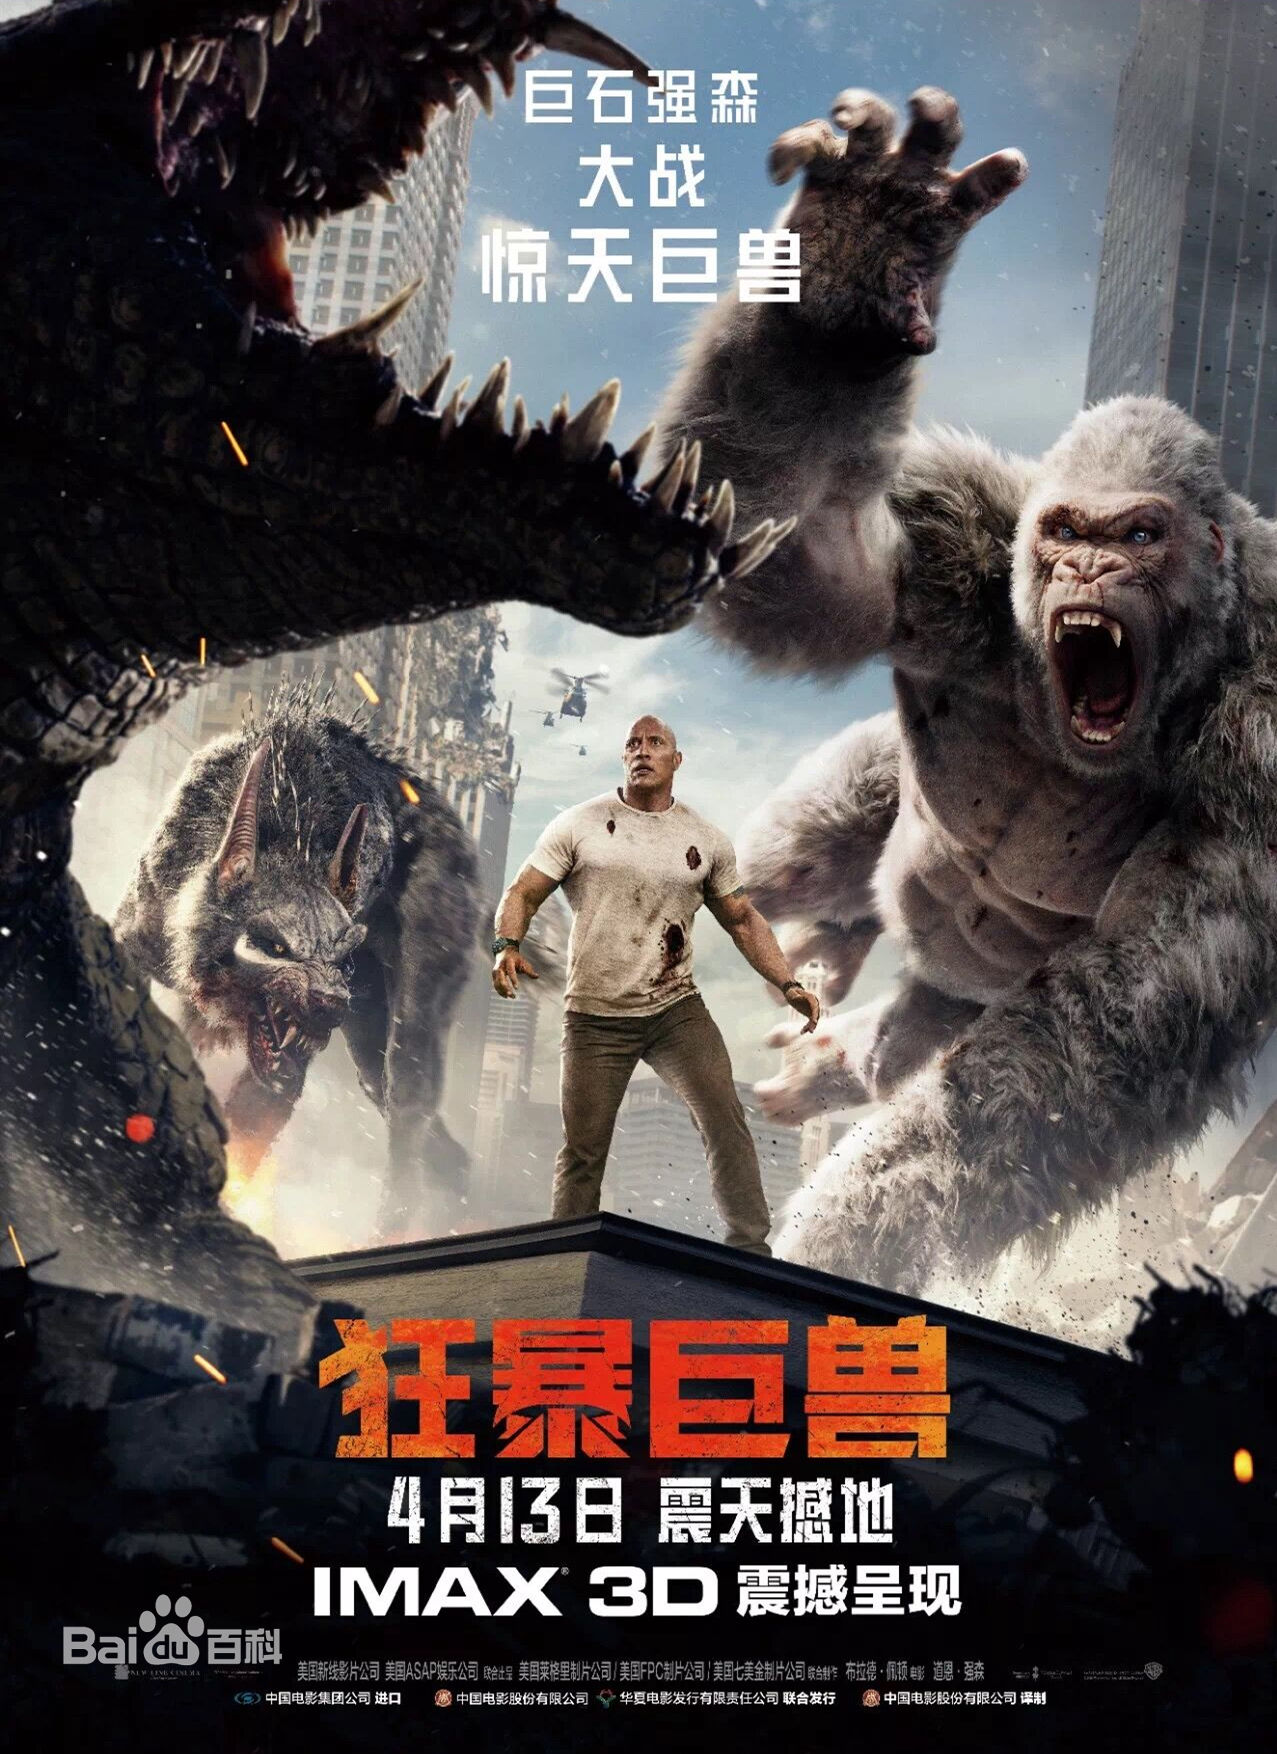 8)《狂暴巨兽》,把怪兽电影拍出了新感觉;巨石强森大